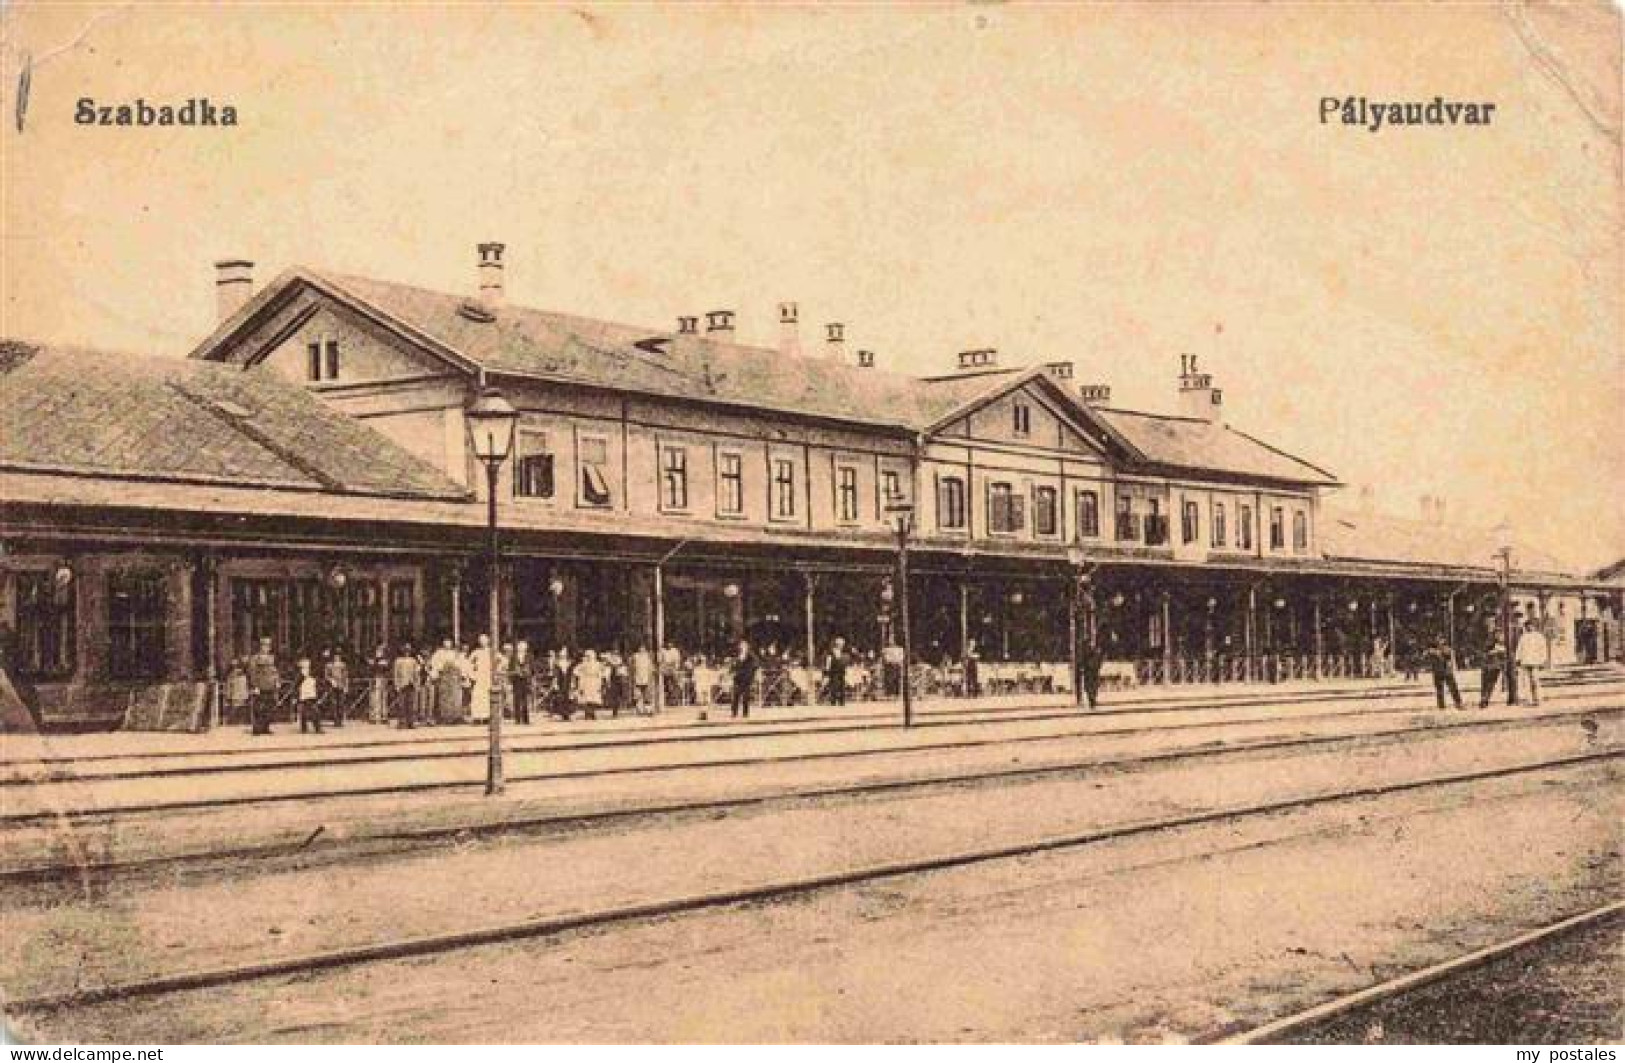 73976632 Szabadka_SUBOTICA_Serbija Palyaudvar Bahnhof - Serbie